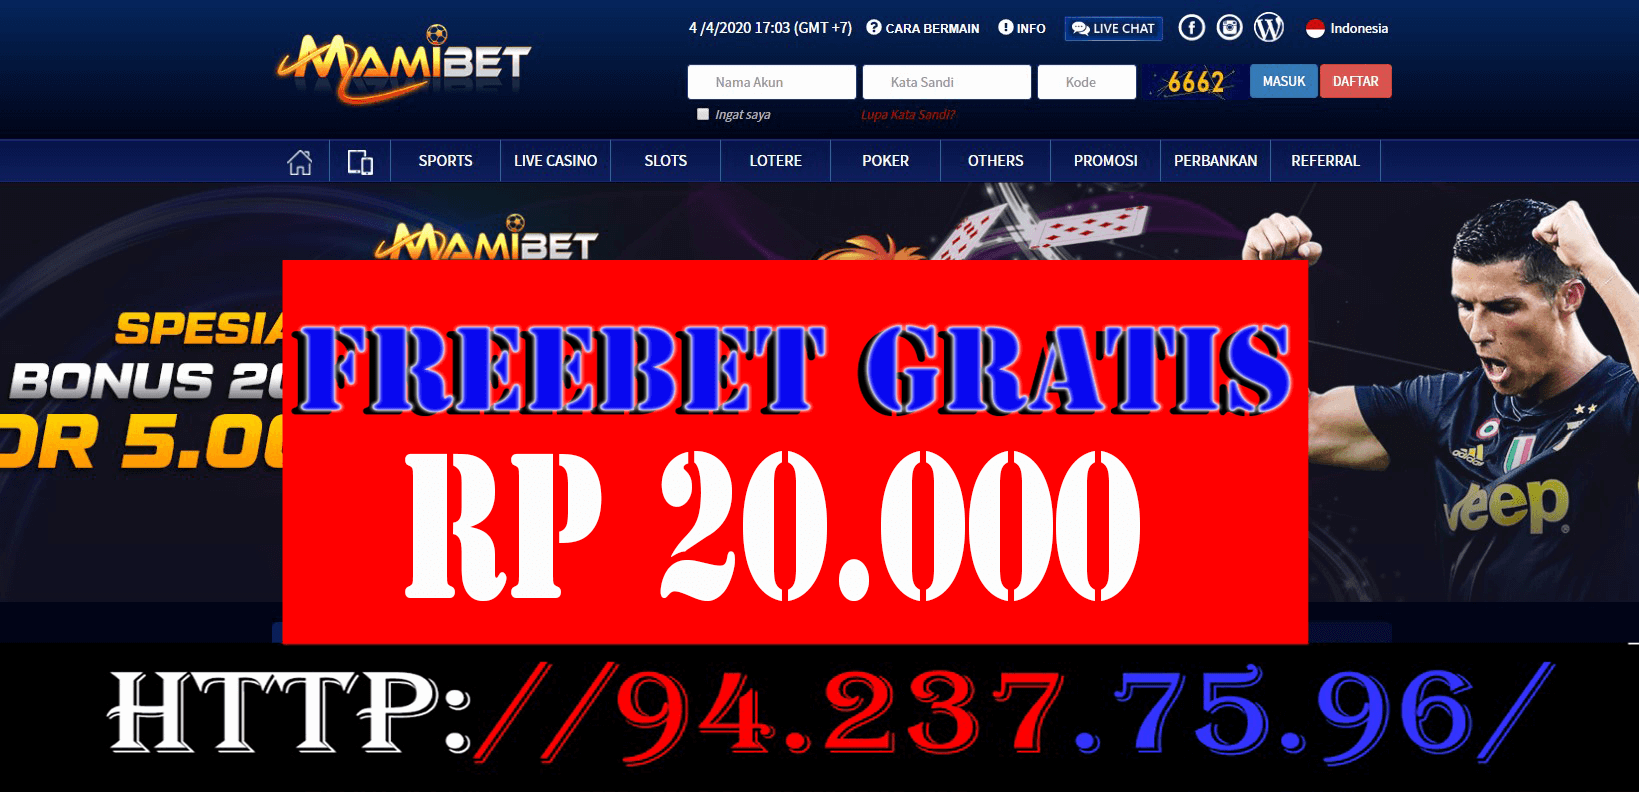 Freebet gratis mamibet Rp 20.000 Tanpa deposit